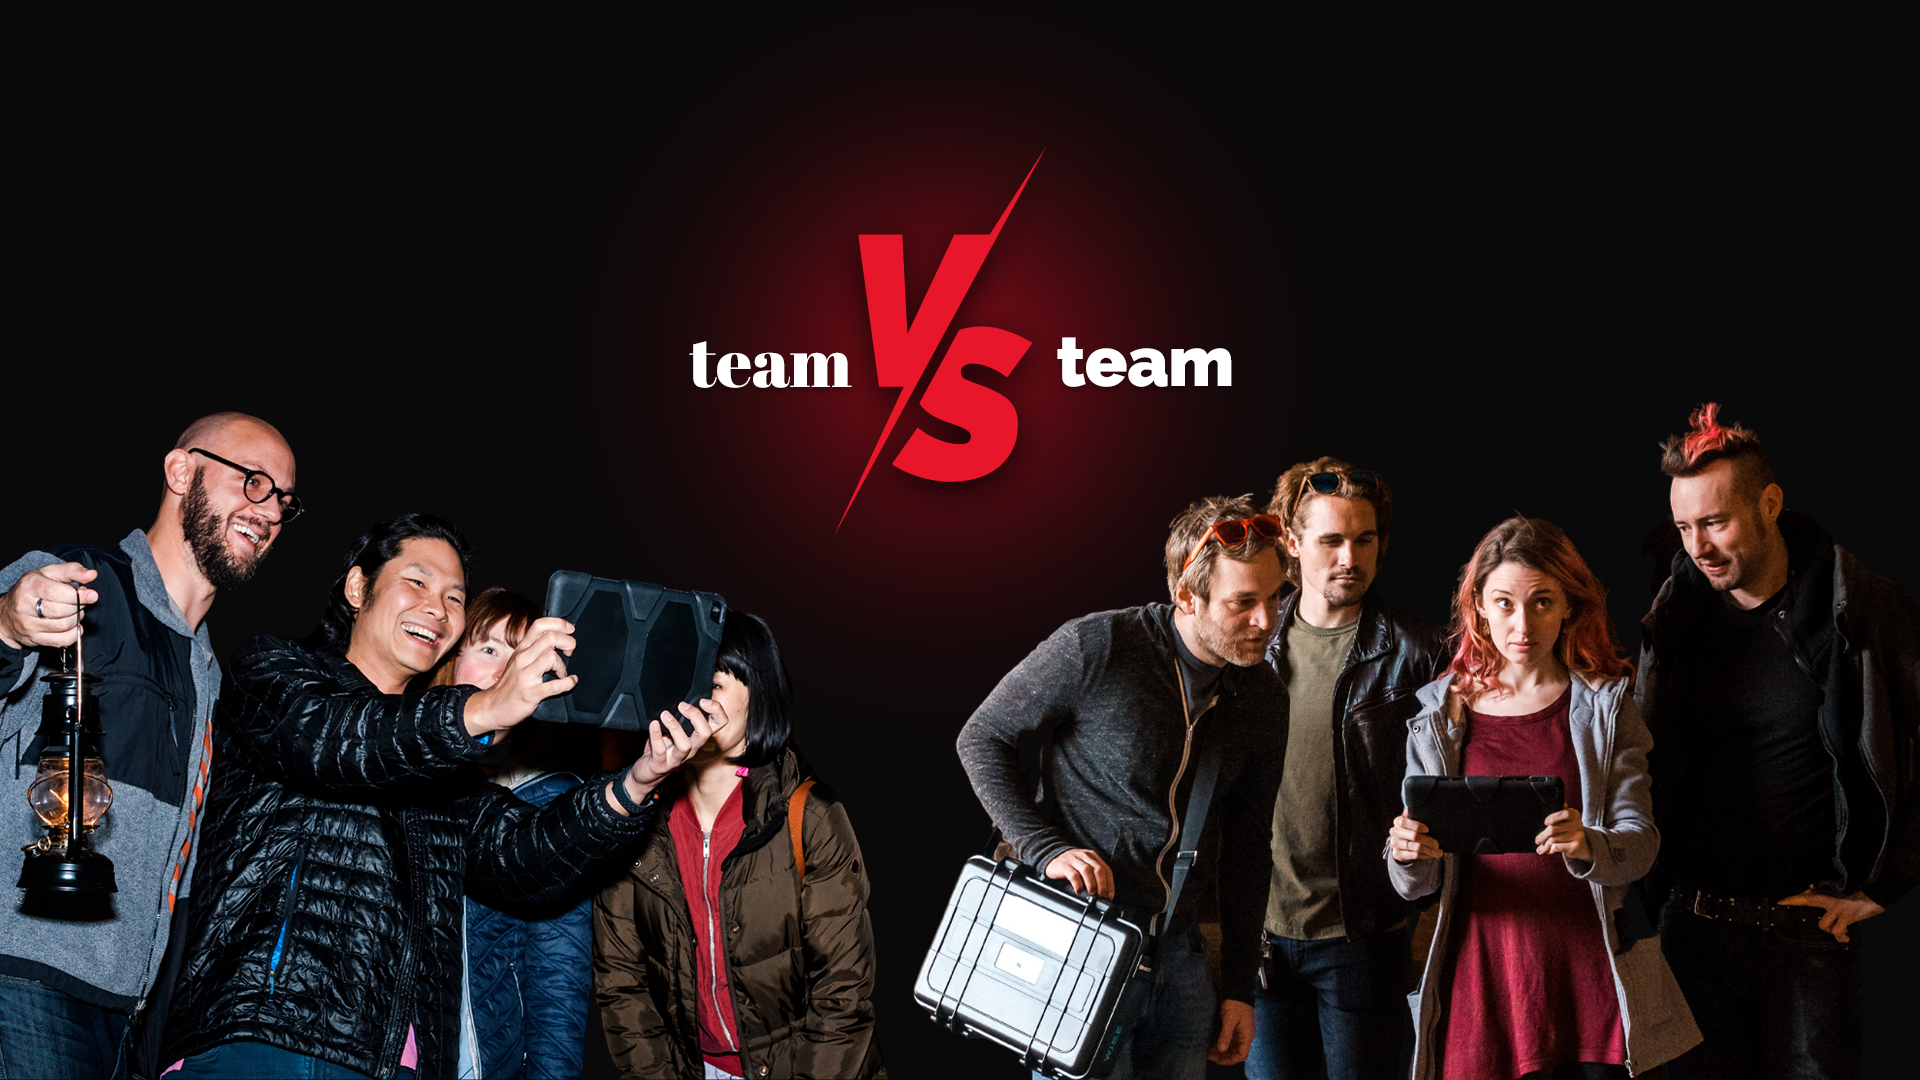 Last Chance - Team vs Team